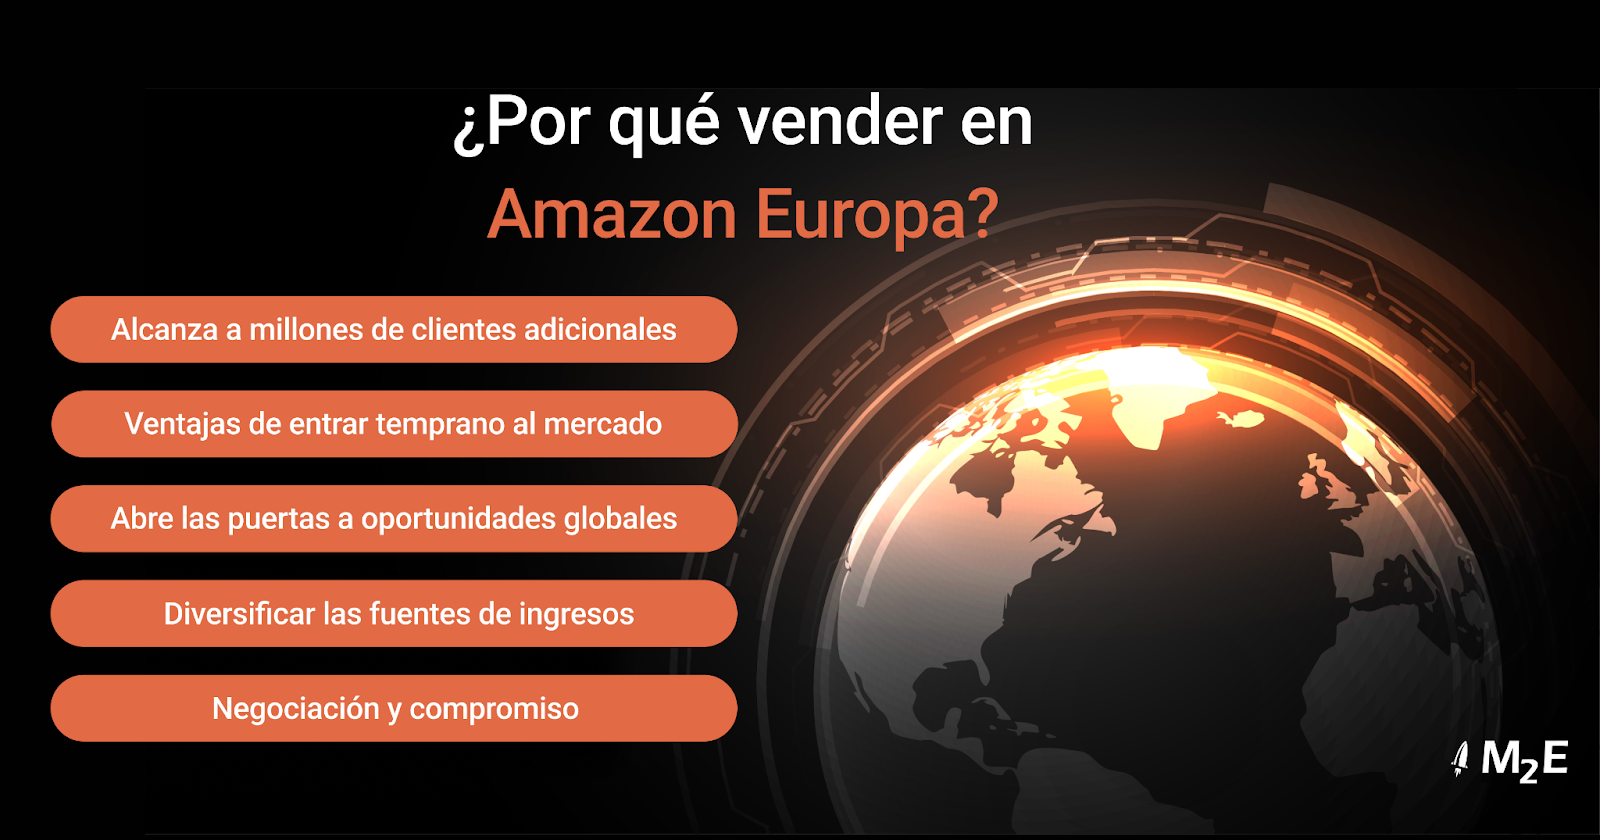 ¿Por qué vender en Amazon Europa?